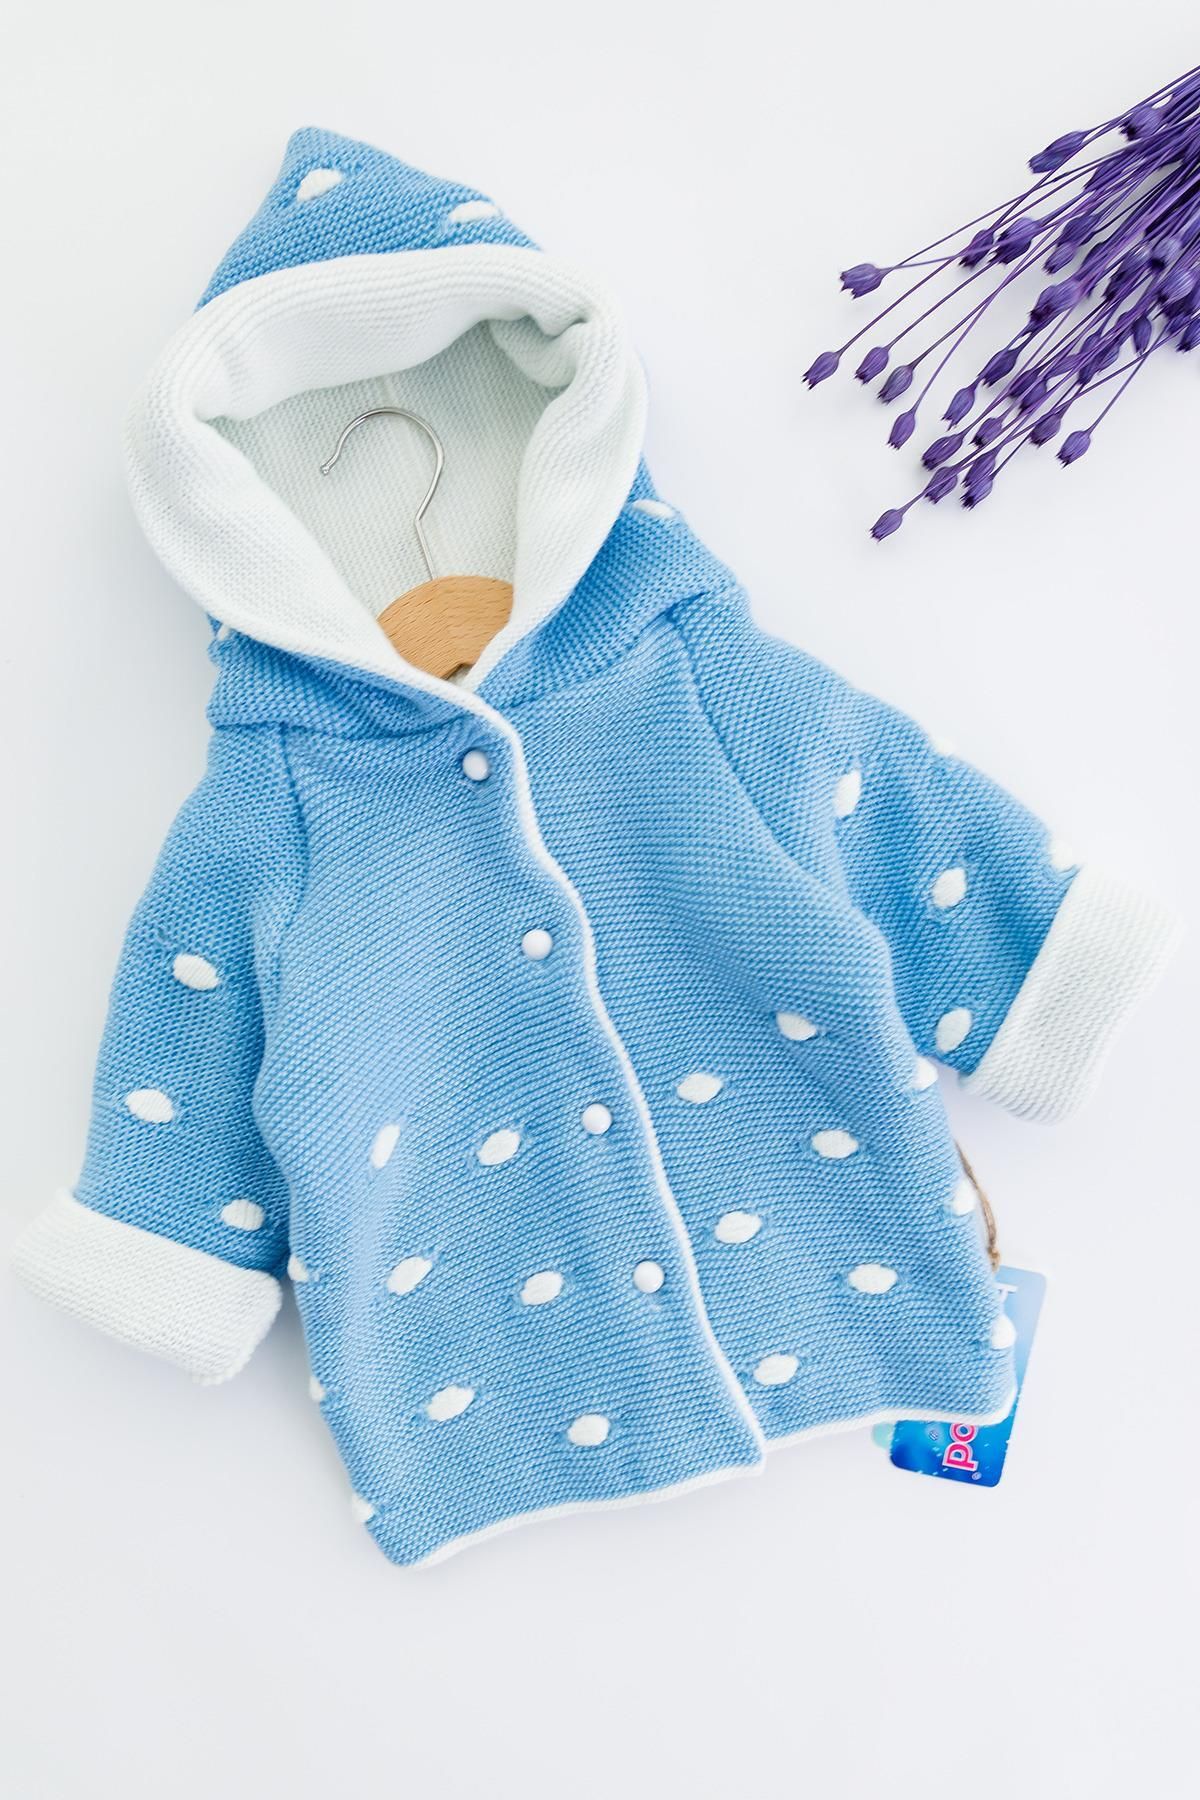 Babymod Kapüşonlu Mavi Erkek Bebek Çift Katlı Triko Hırka